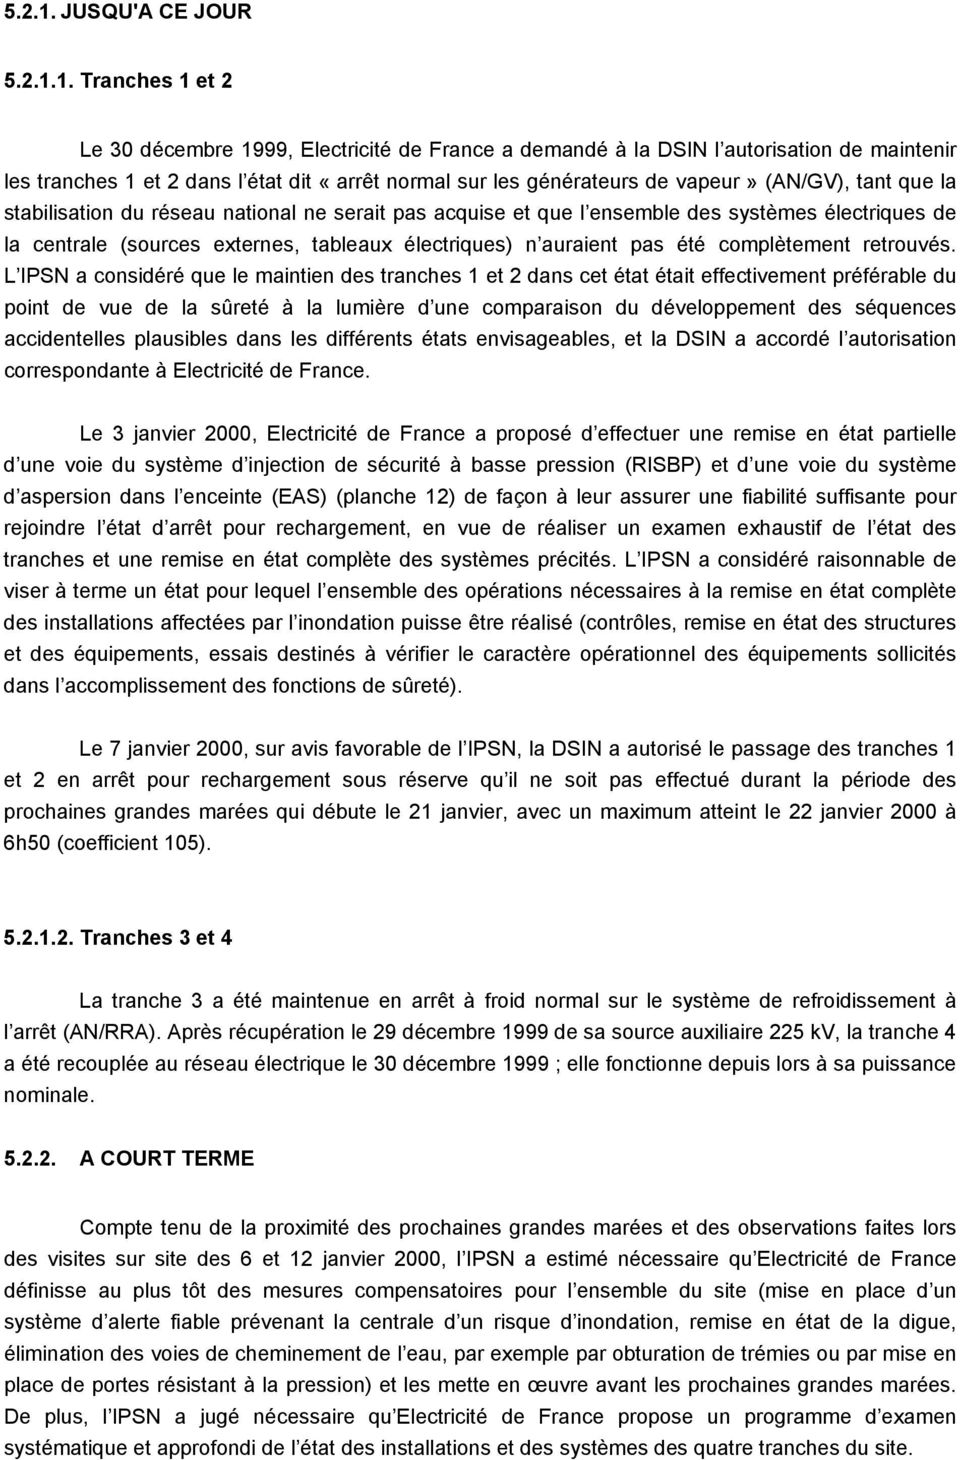 Tranches 1 et 2 Le 30 décembre 1999, Electricité de France a demandé à la DSIN l autorisation de maintenir les tranches 1 et 2 dans l état dit «arrêt normal sur les générateurs de vapeur» (AN/GV),